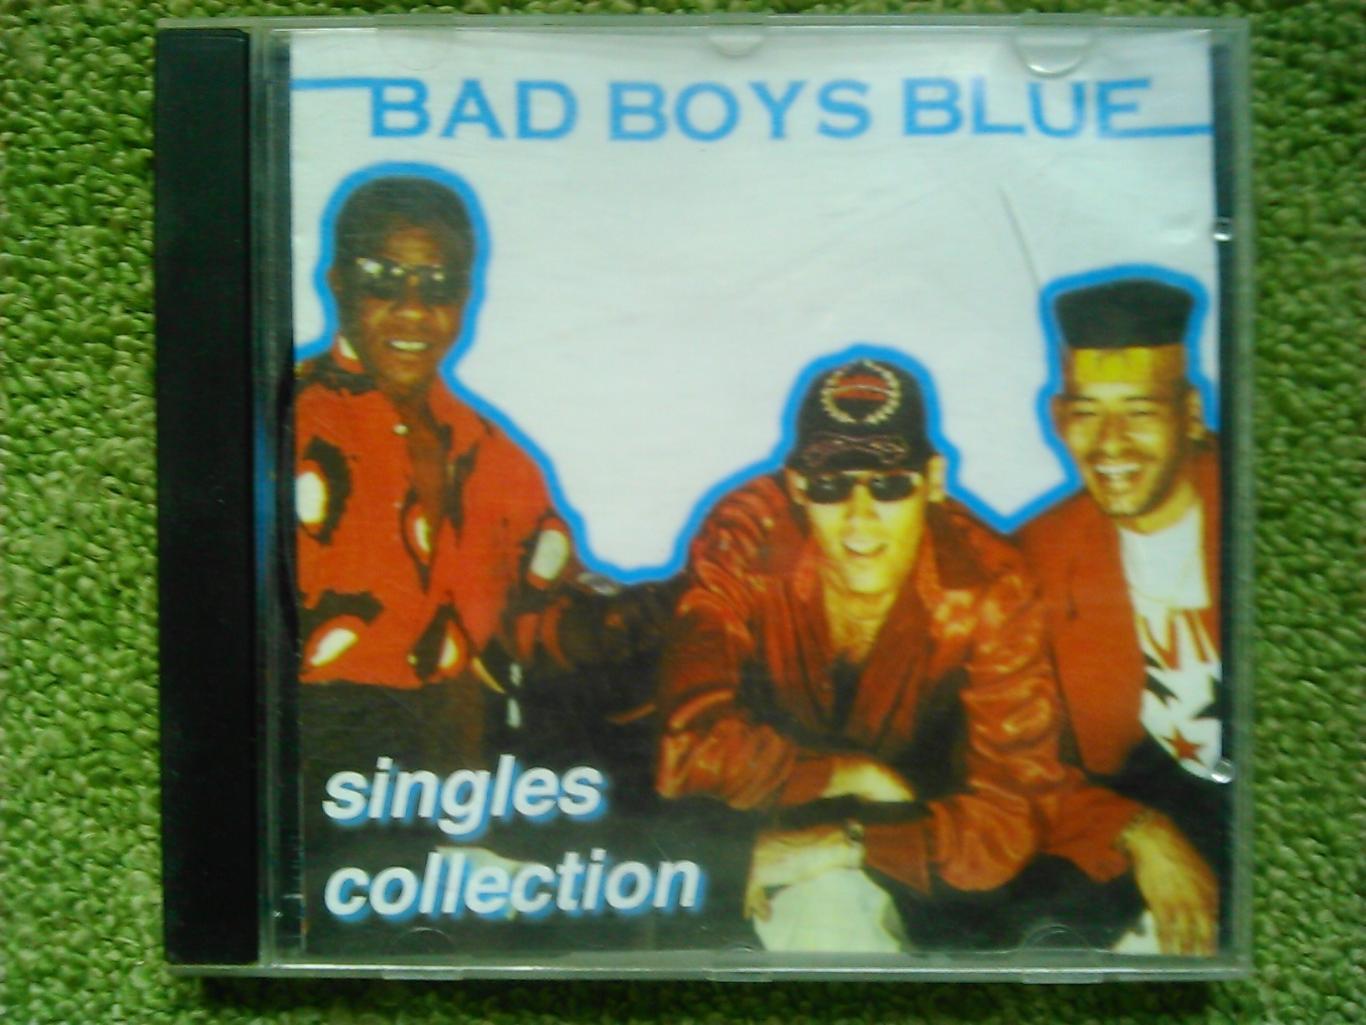 Audio CD. BAD BOYS BLUE-Коллекция синглов. Оптом скидки до 47%